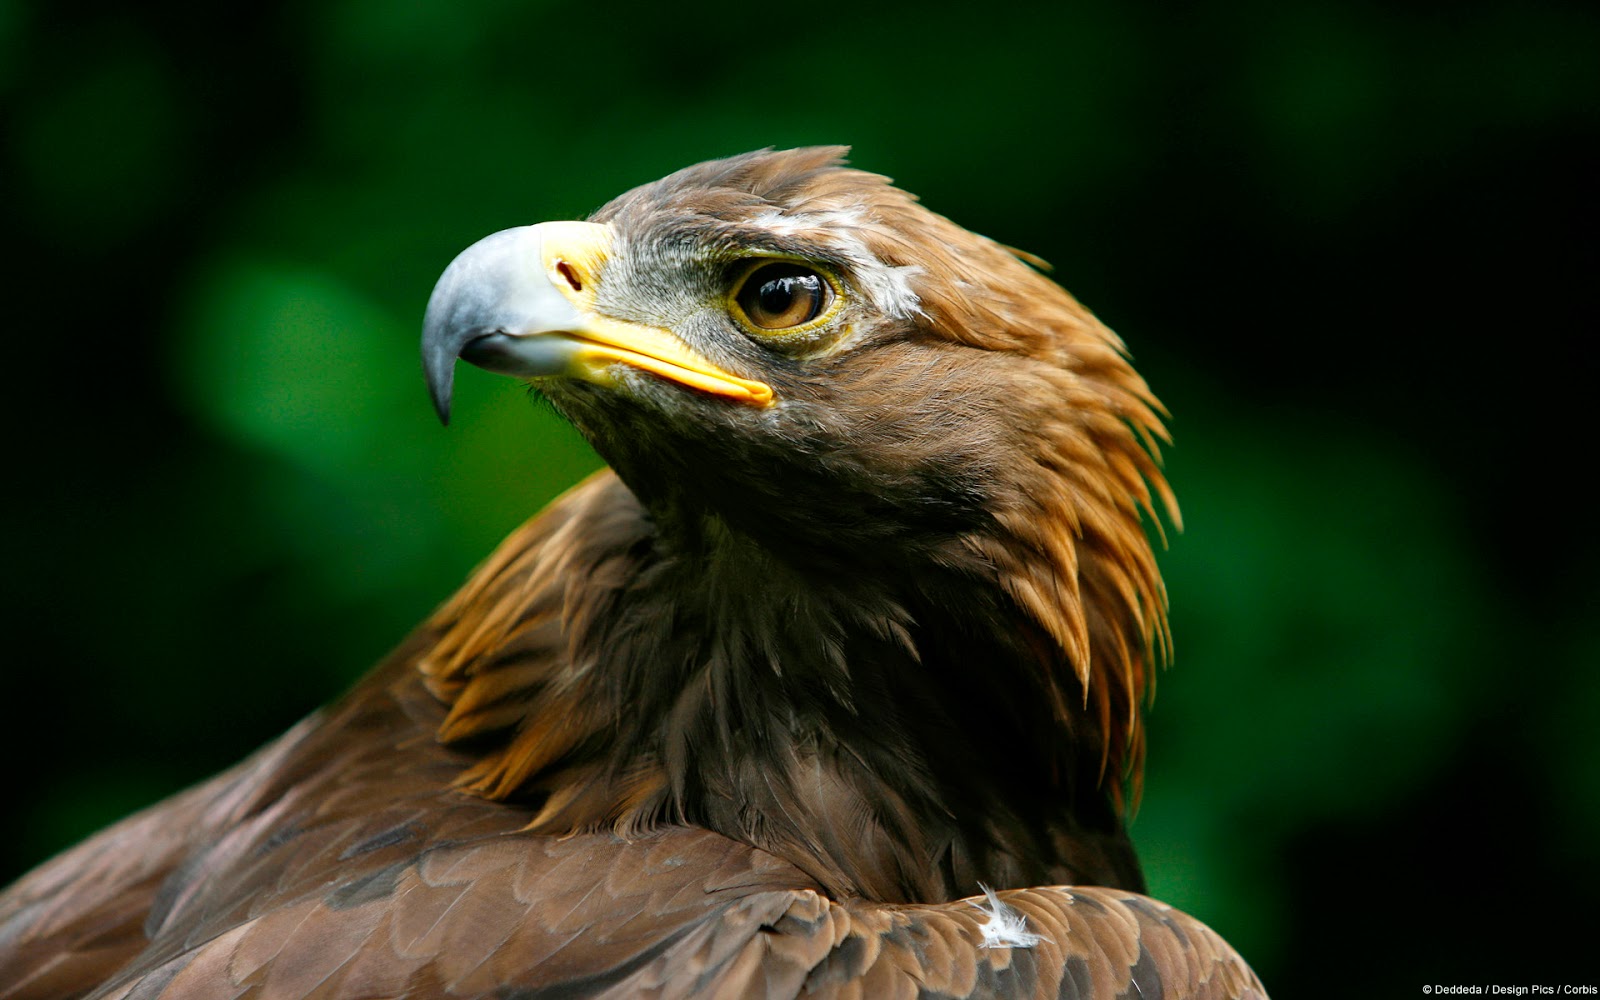 aguia tapete,vogel,raubvogel,steinadler,accipitriformes,adler